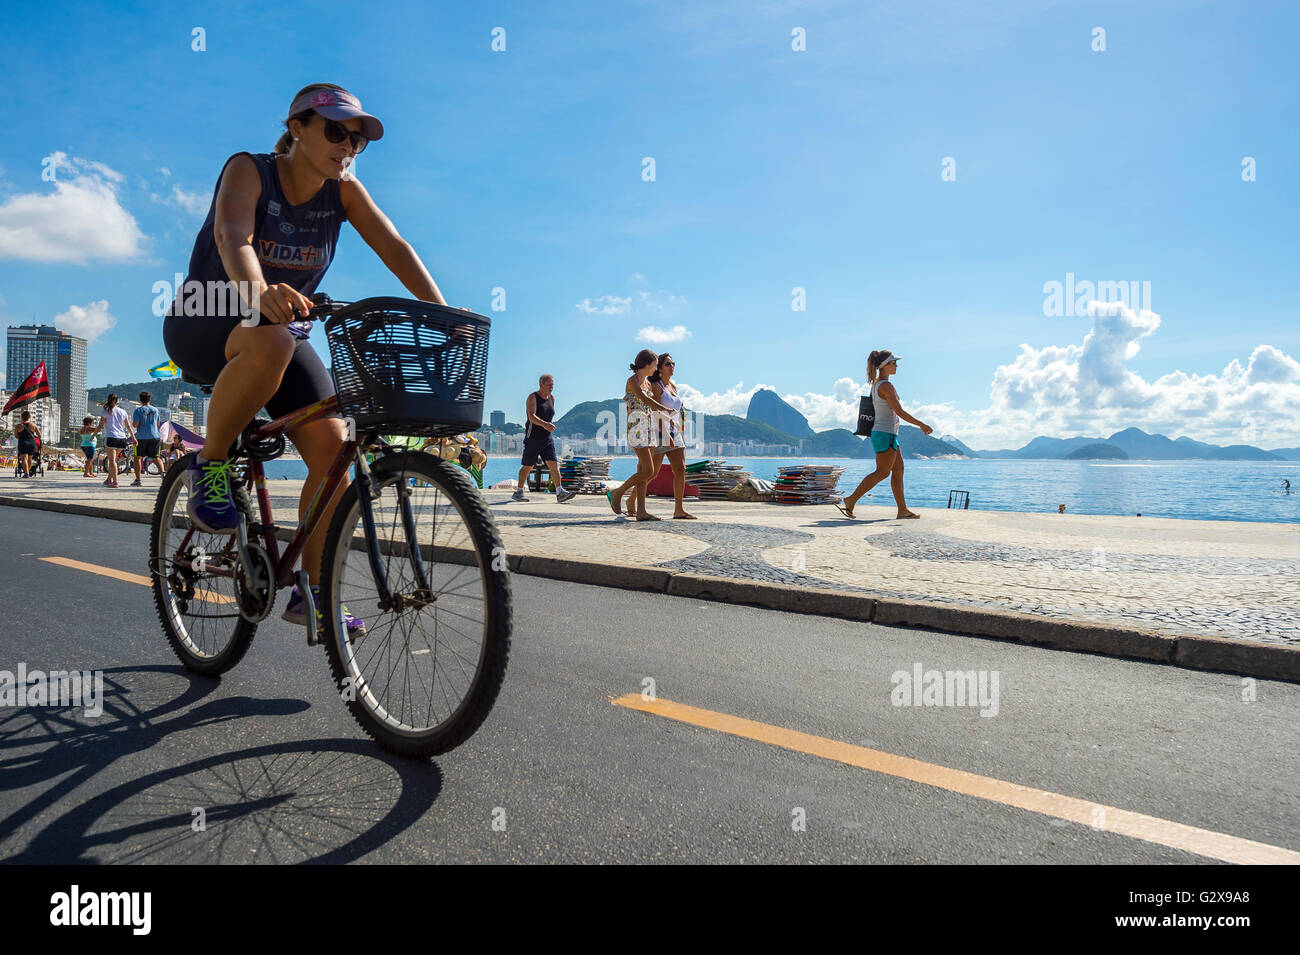 RIO DE JANEIRO - 20. März 2016: Eine brasilianische Frau fährt Fahrrad auf der Strandpromenade Avenida Atlântica Radweg in Copacabana. Stockfoto